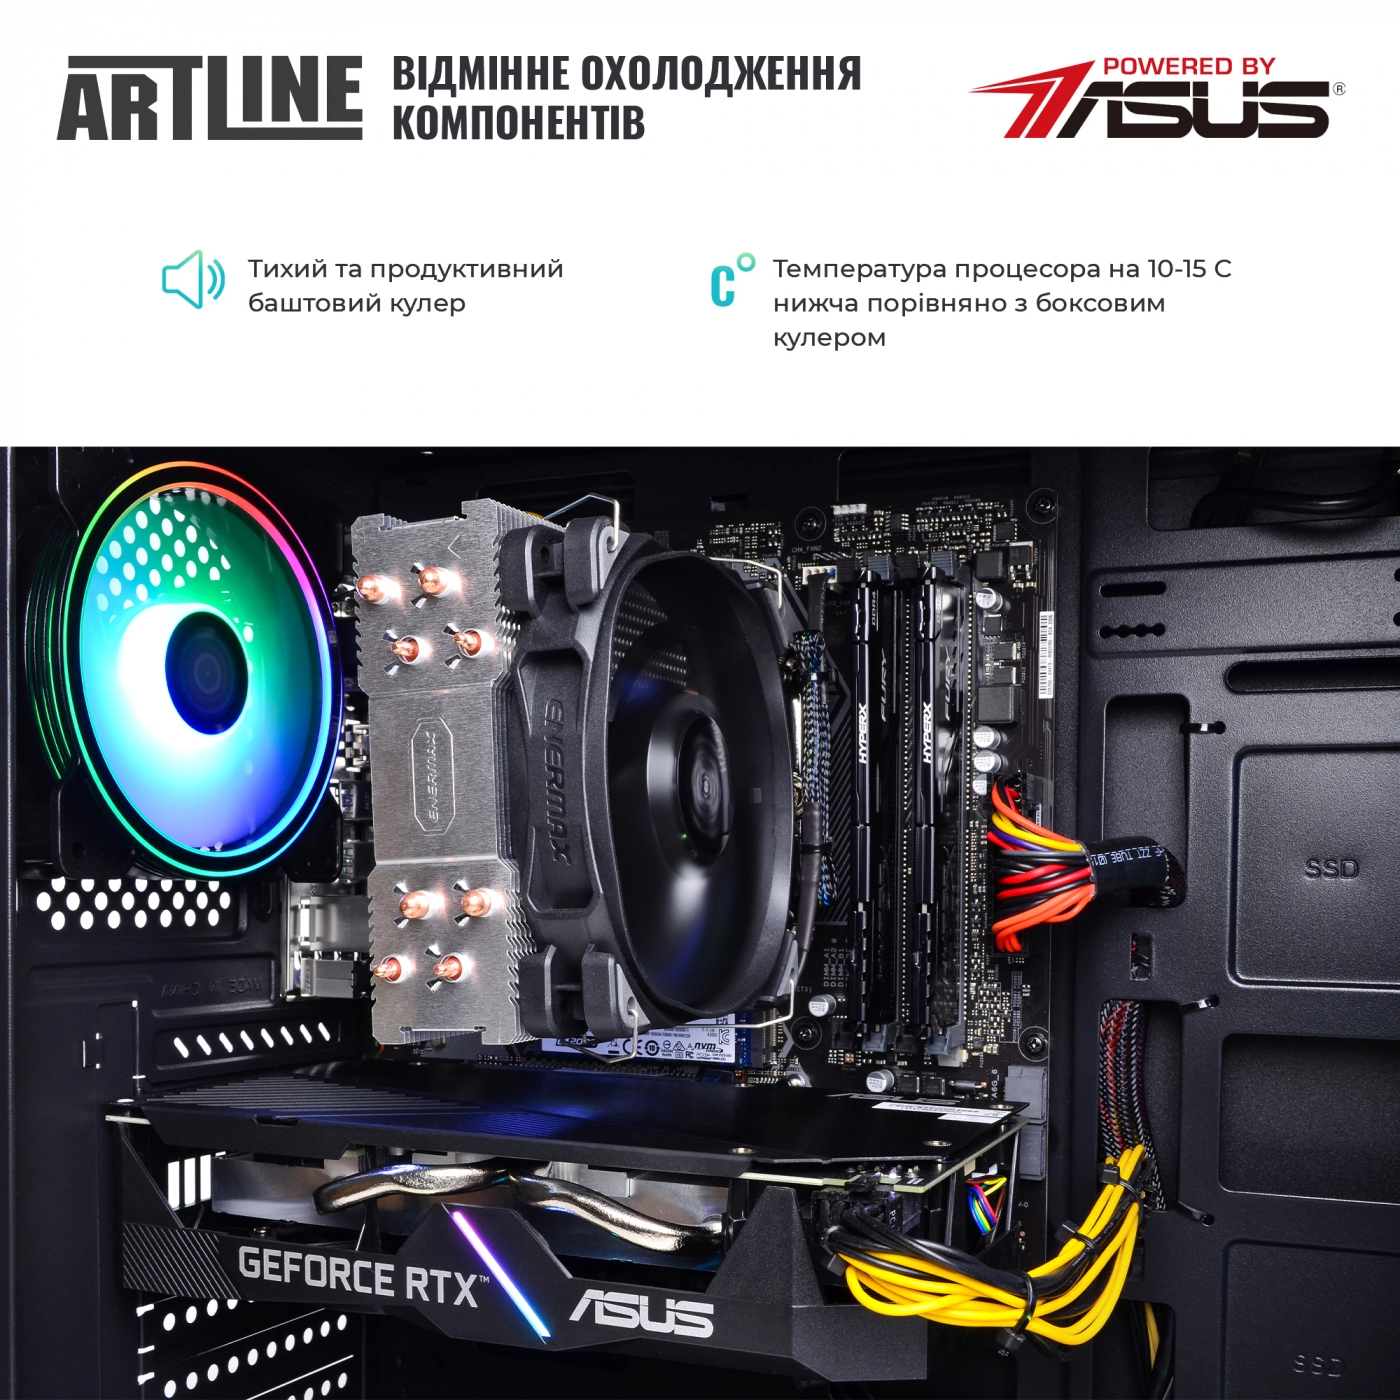 Купить Компьютер ARTLINE Gaming X73v23 - фото 7